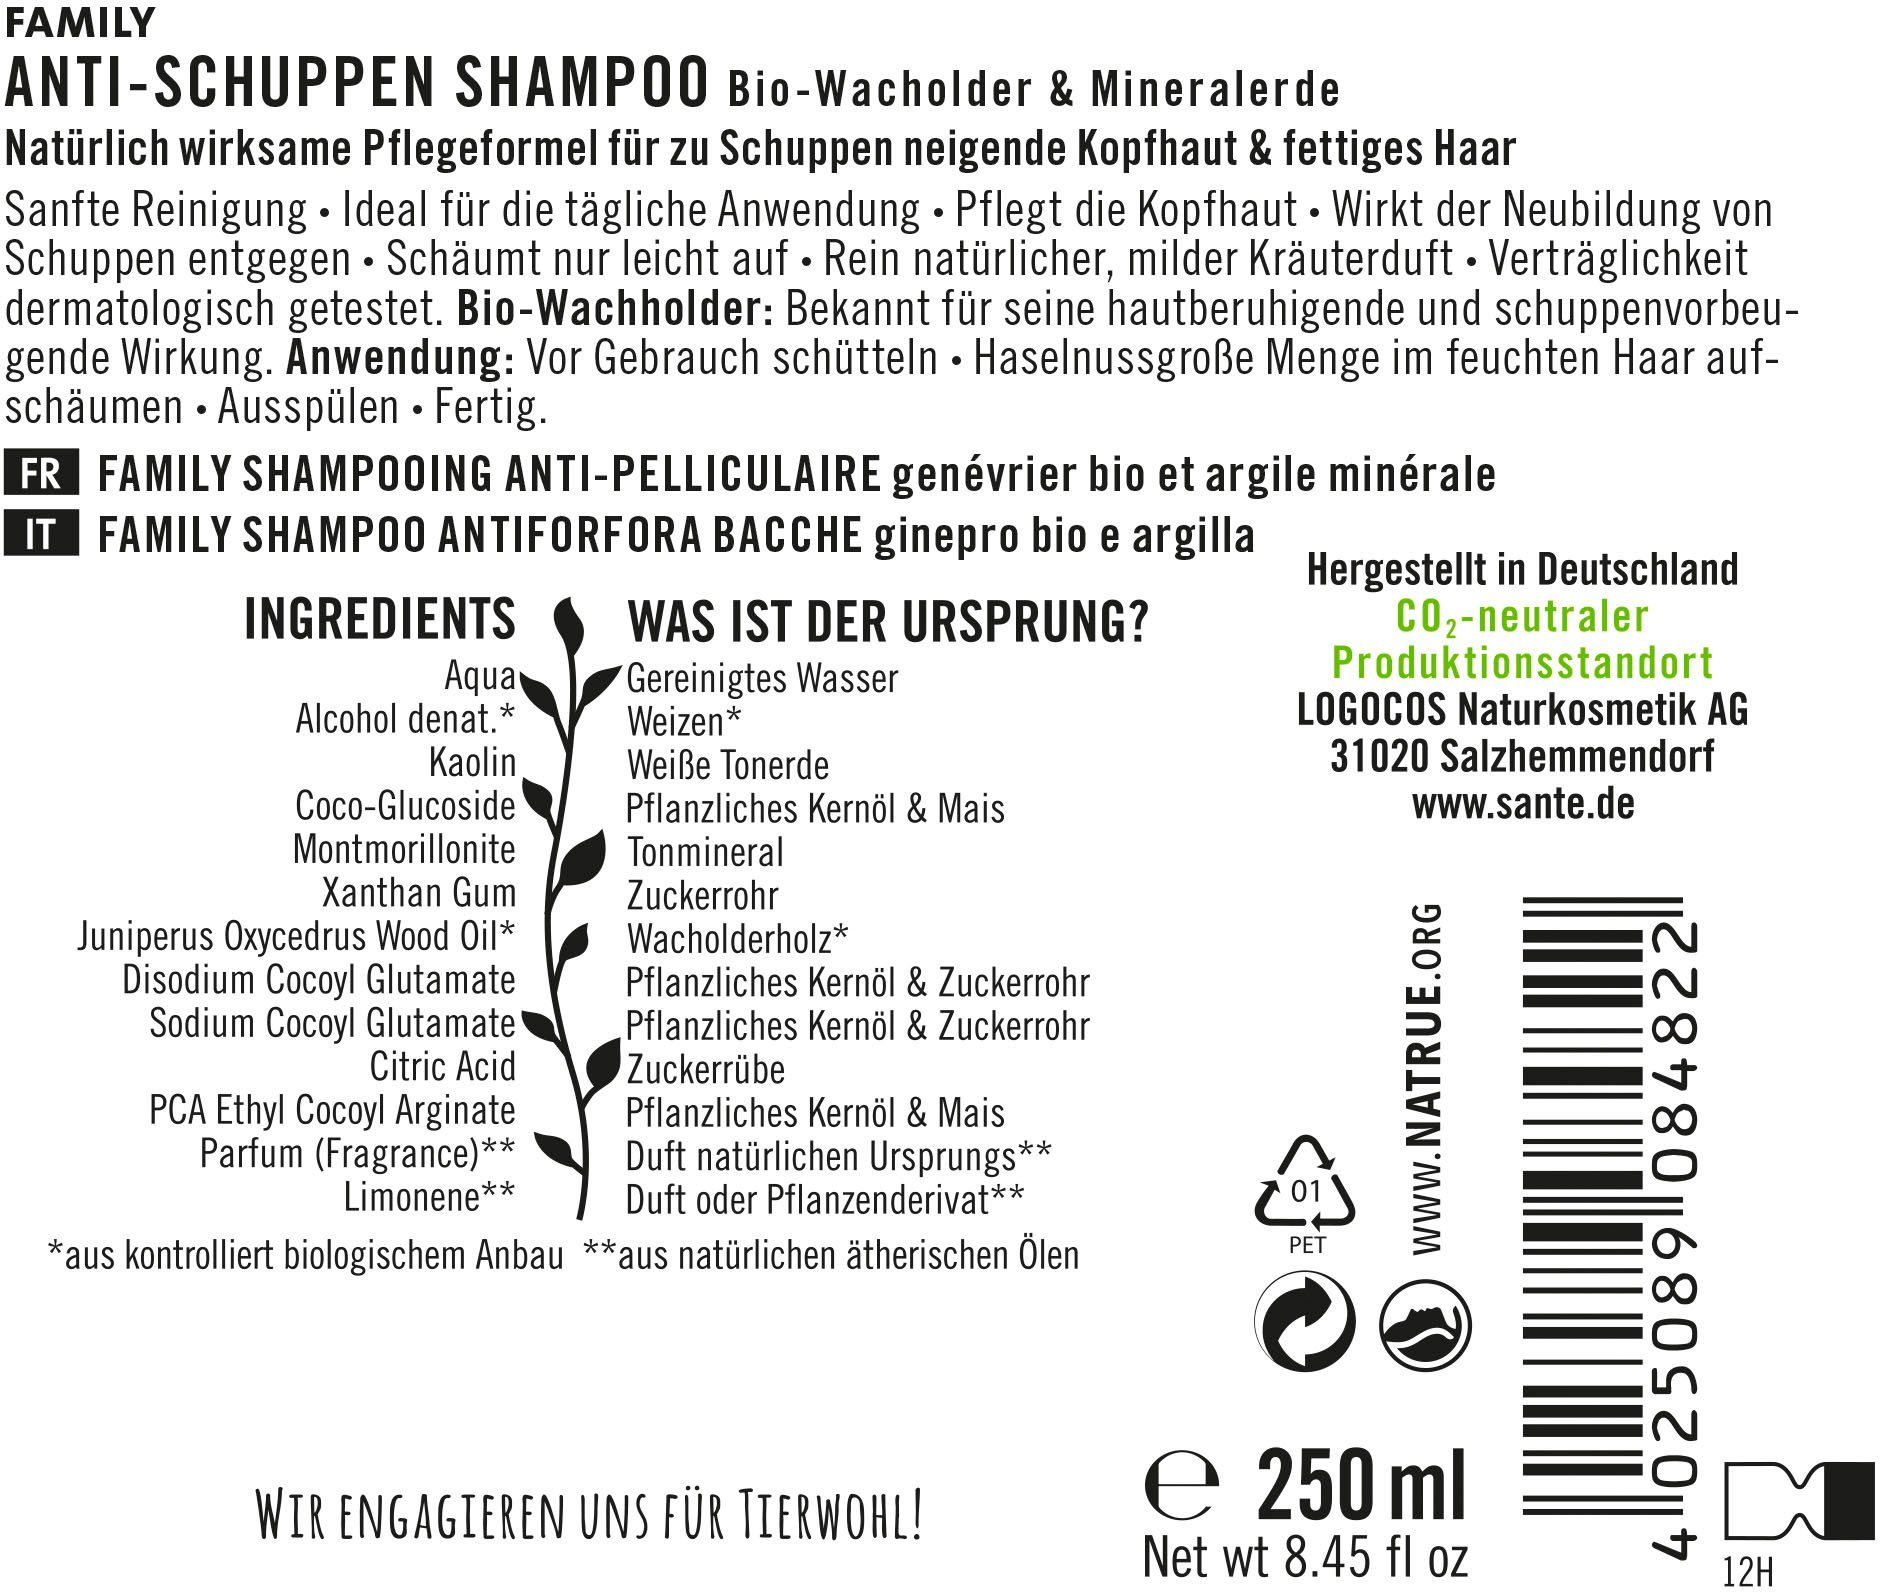 SANTE Anti-Schuppen Shampoo FAMILY Haarshampoo